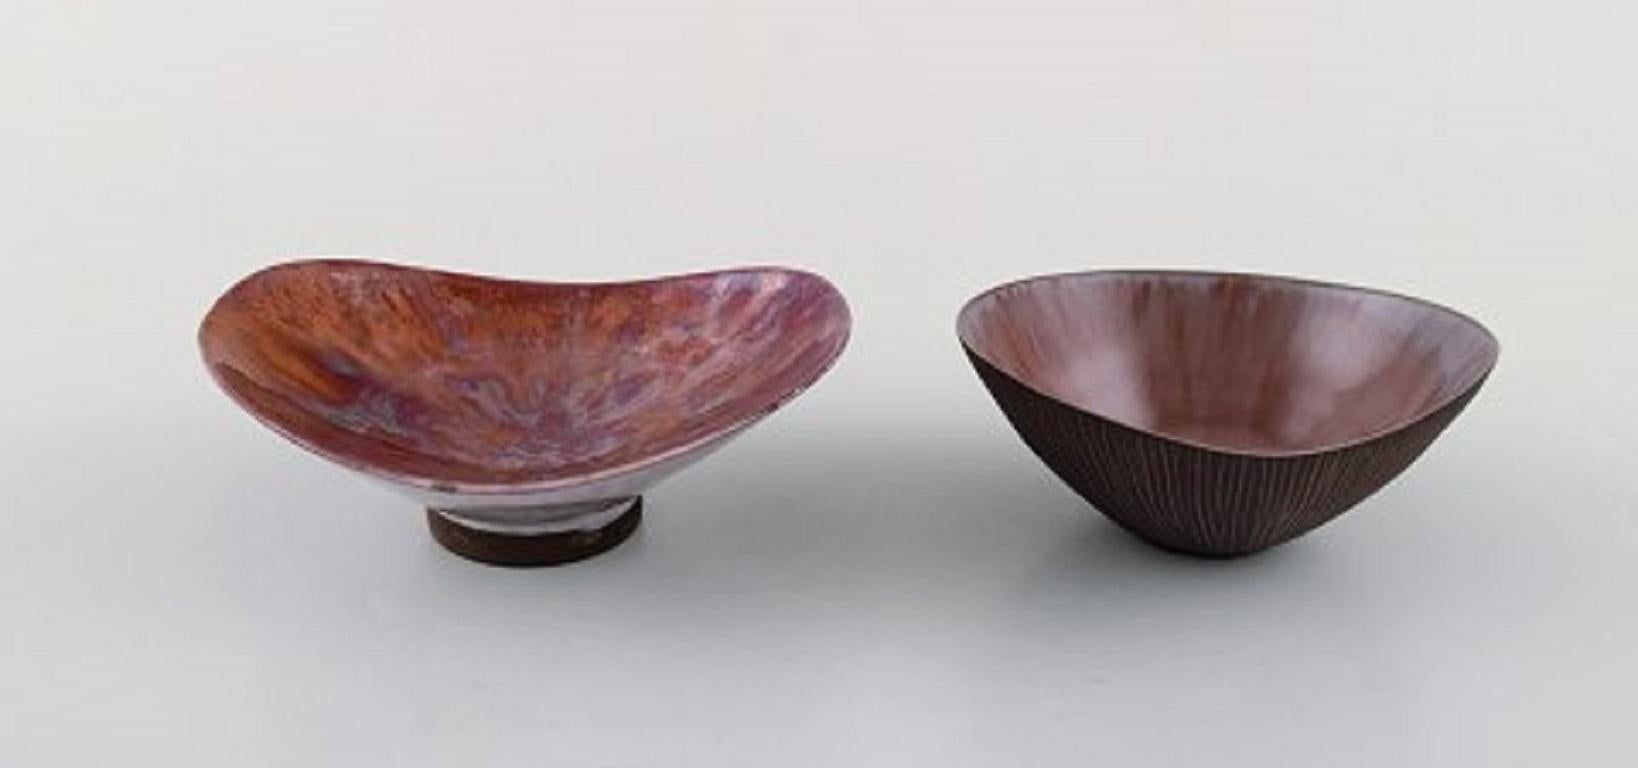 Sven Hofverberg (1923-1998) Schwedischer Keramiker. Zwei einzigartige glasierte Keramikschalen. Schöne Metallic-Glasur, 1980er Jahre.
Größte Maße: 11 x 4 cm.
In sehr gutem Zustand.
Unterschrieben.